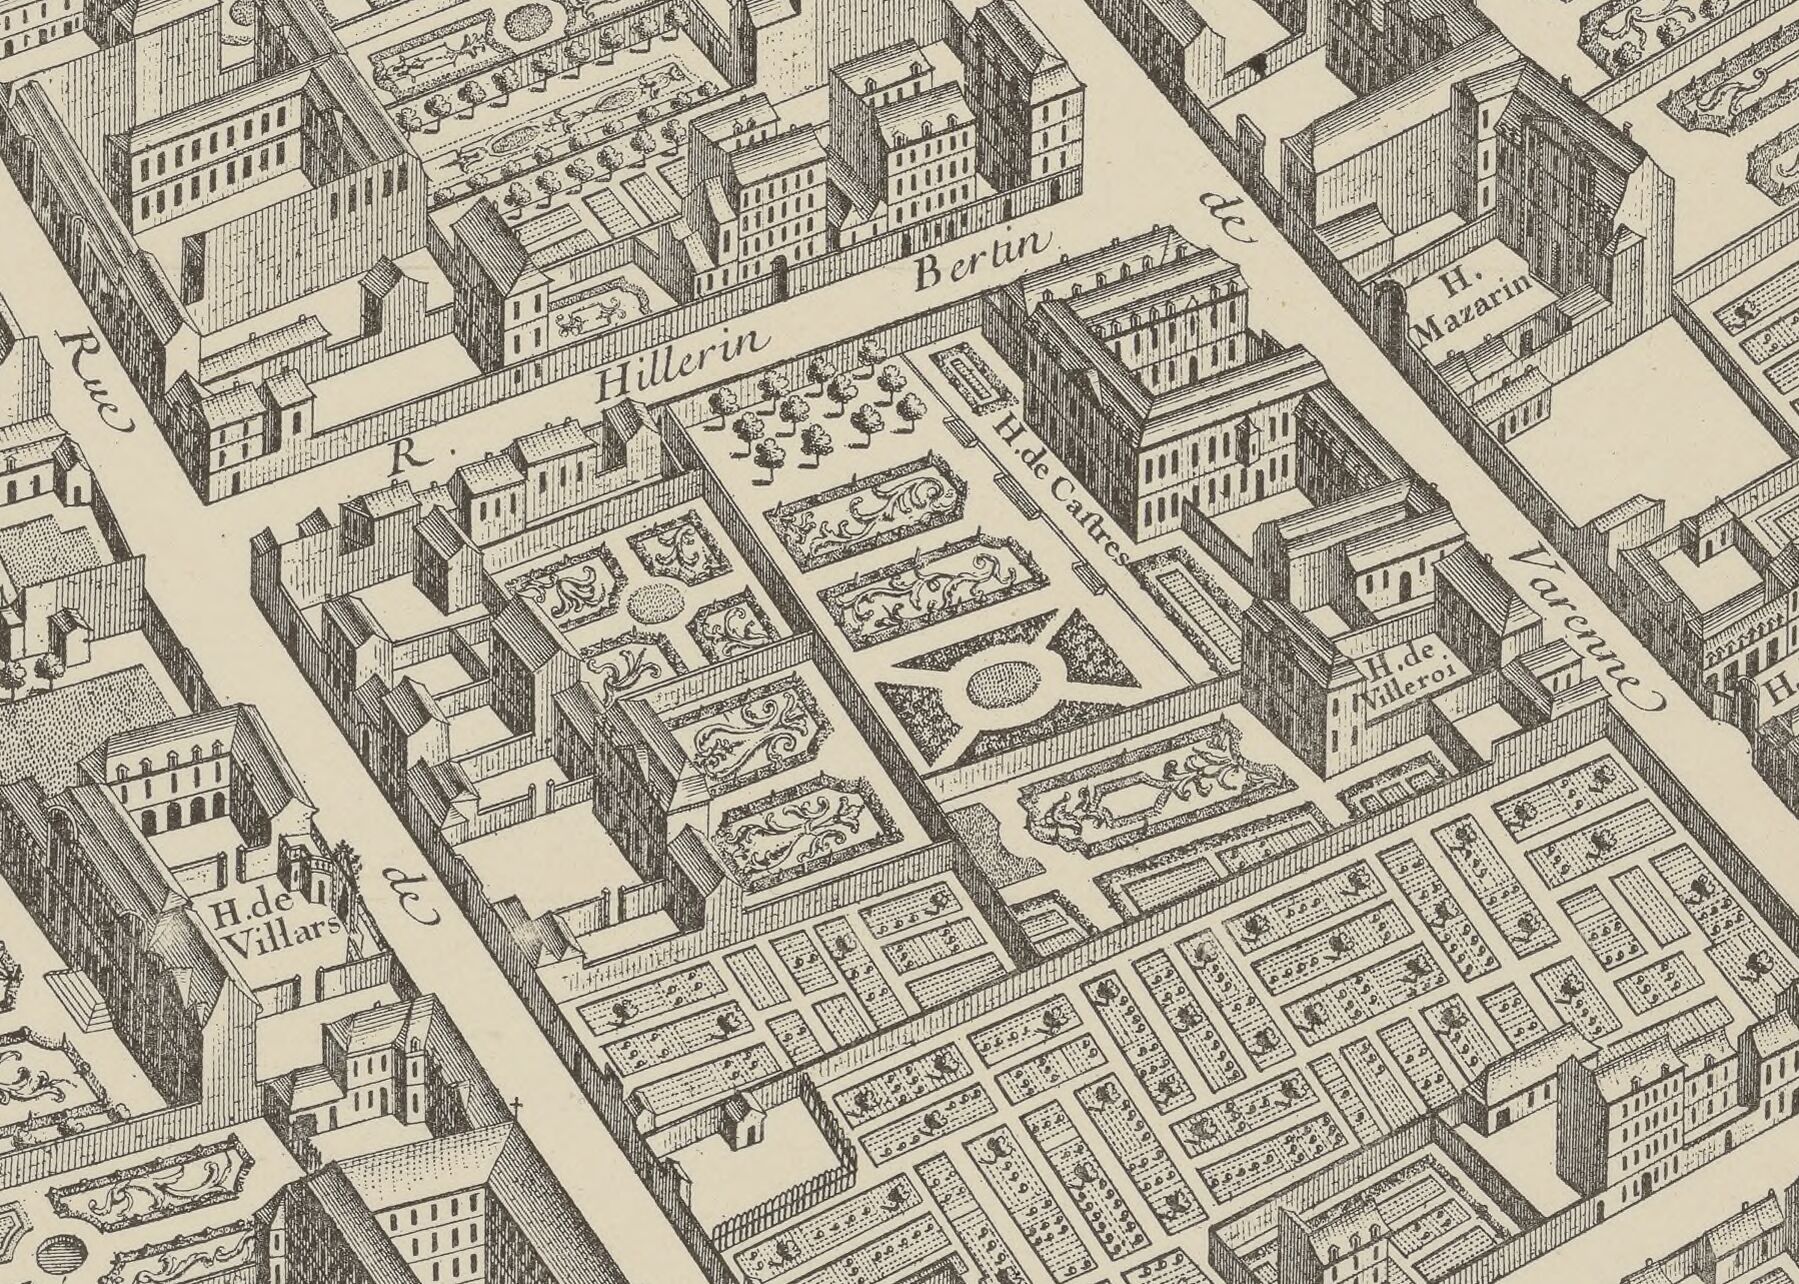 Plan
de Turgot, 1739 – Détail d’une planche gravée montrant l’Hôtel de Castries et
son jardin. Paris, Bibliothèque nationale de France.